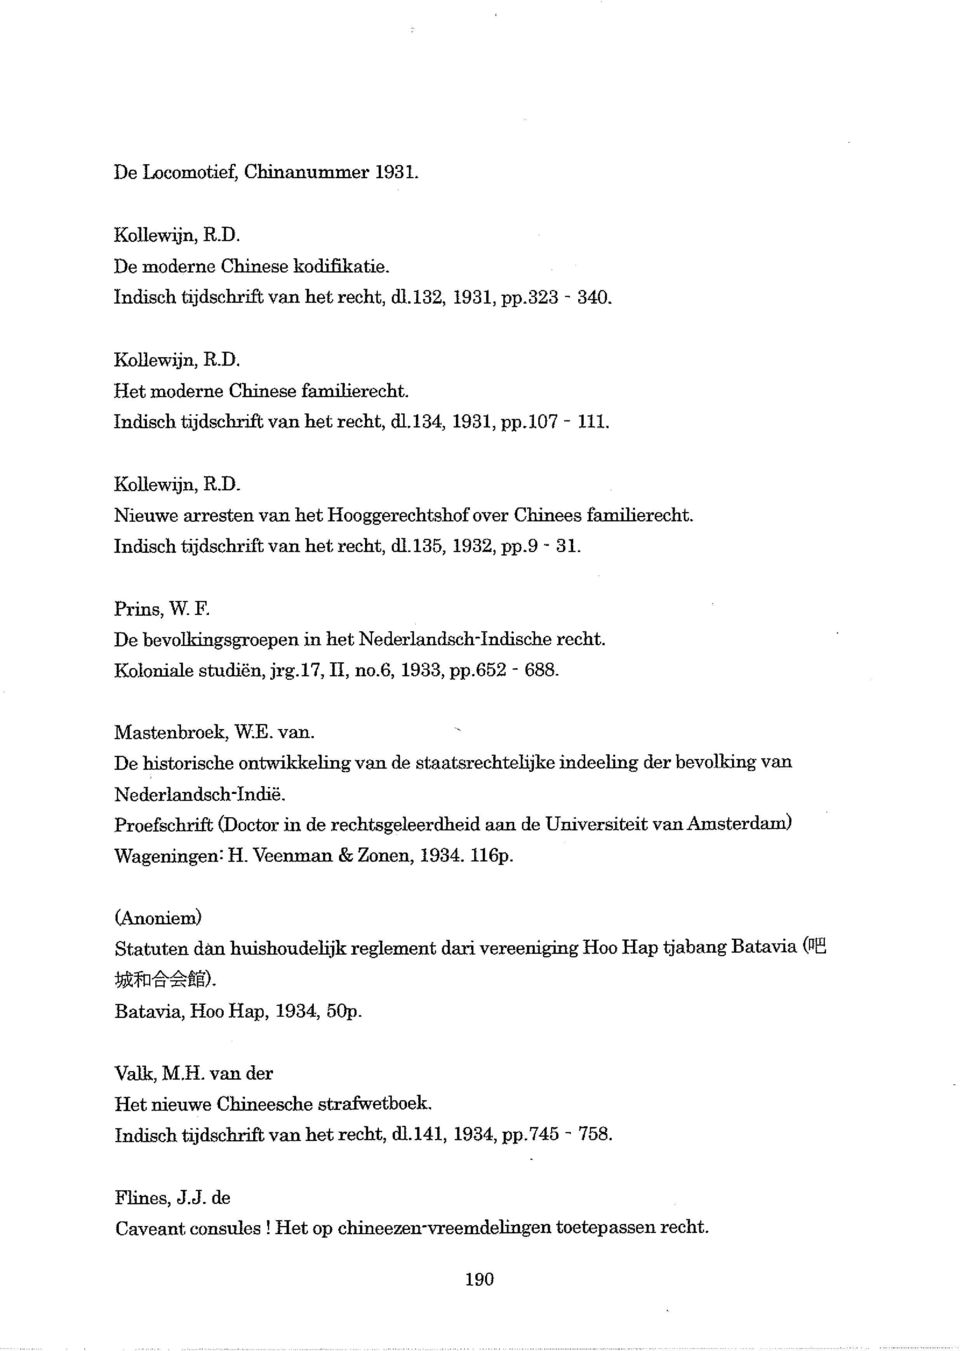 9-31. Prins, W.F. De bevolkingsgroepen in het Nederlandsch-Indische recht. Koloniale studien, jrg.17, II, no.6, 1933, pp.652-688. Mastenbroek, WE. van.